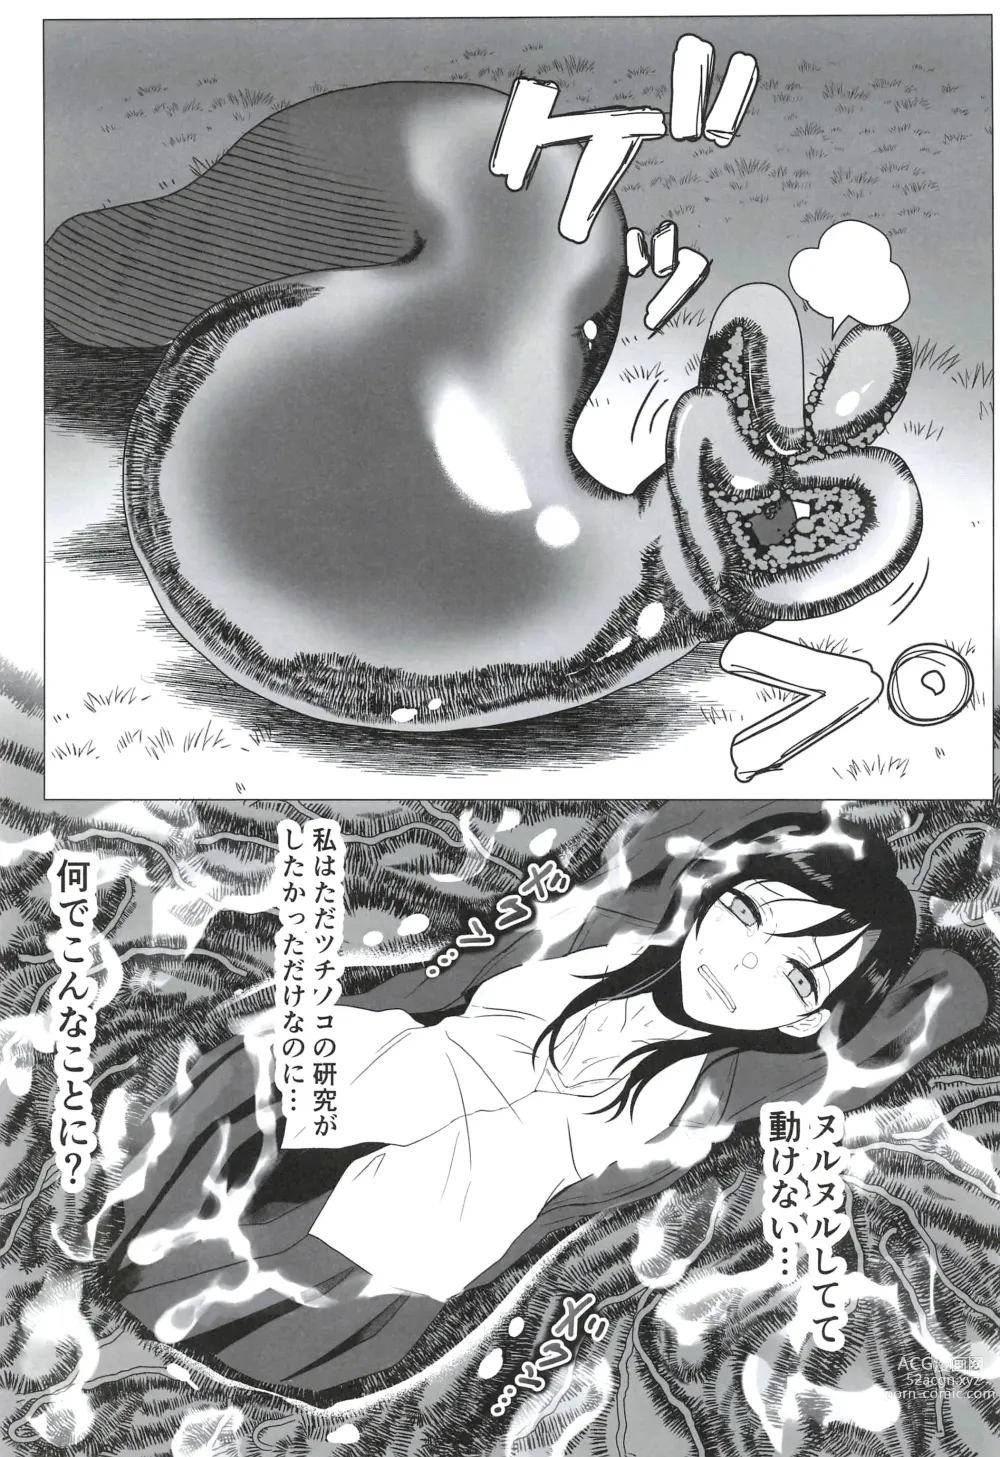 Page 11 of doujinshi Seifuku Kai In